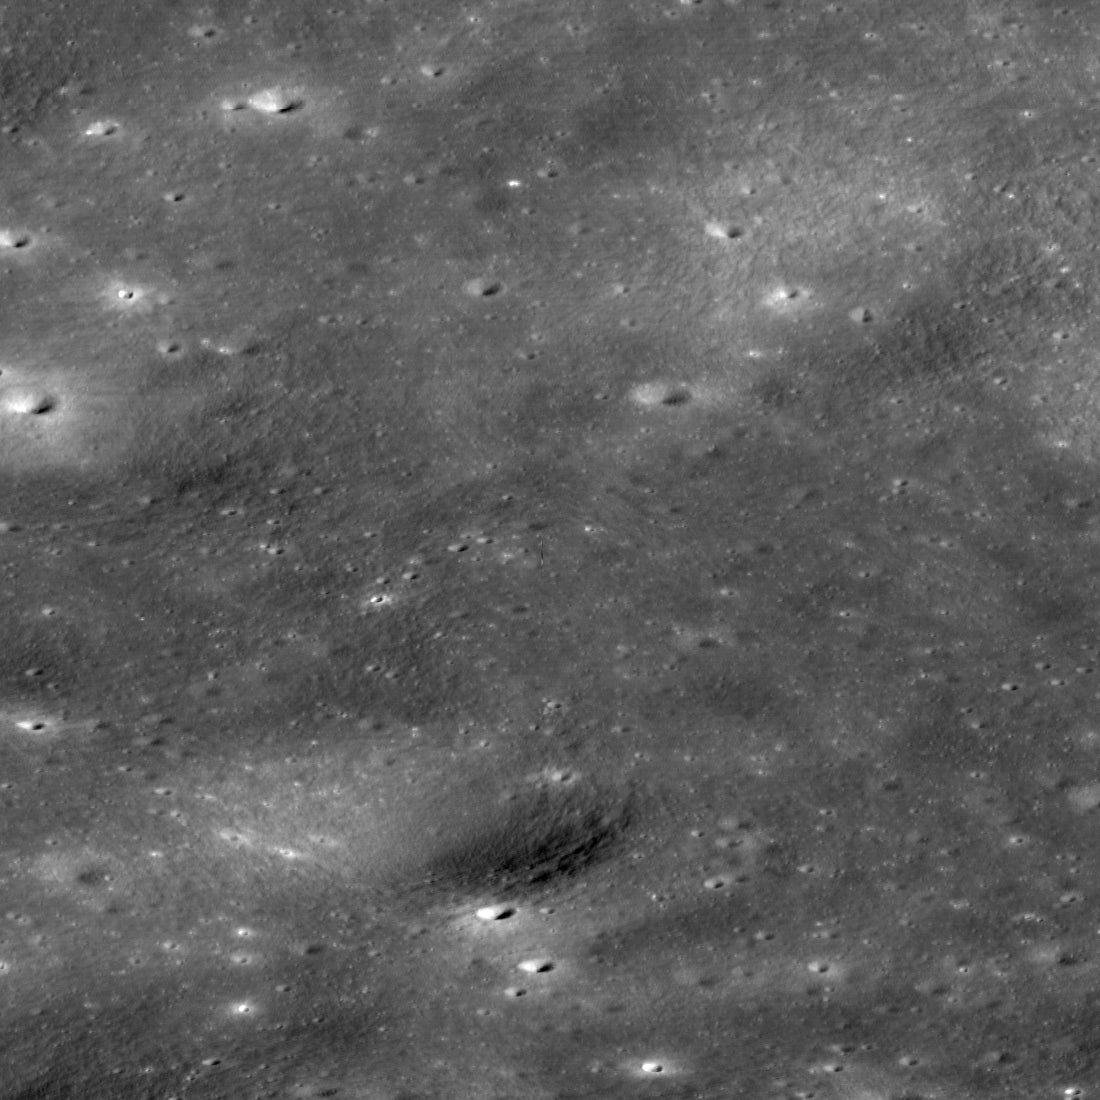 Лунный орбитальный аппарат НАСА сделал нечеткое изображение отдельных космических кораблей вокруг Луны